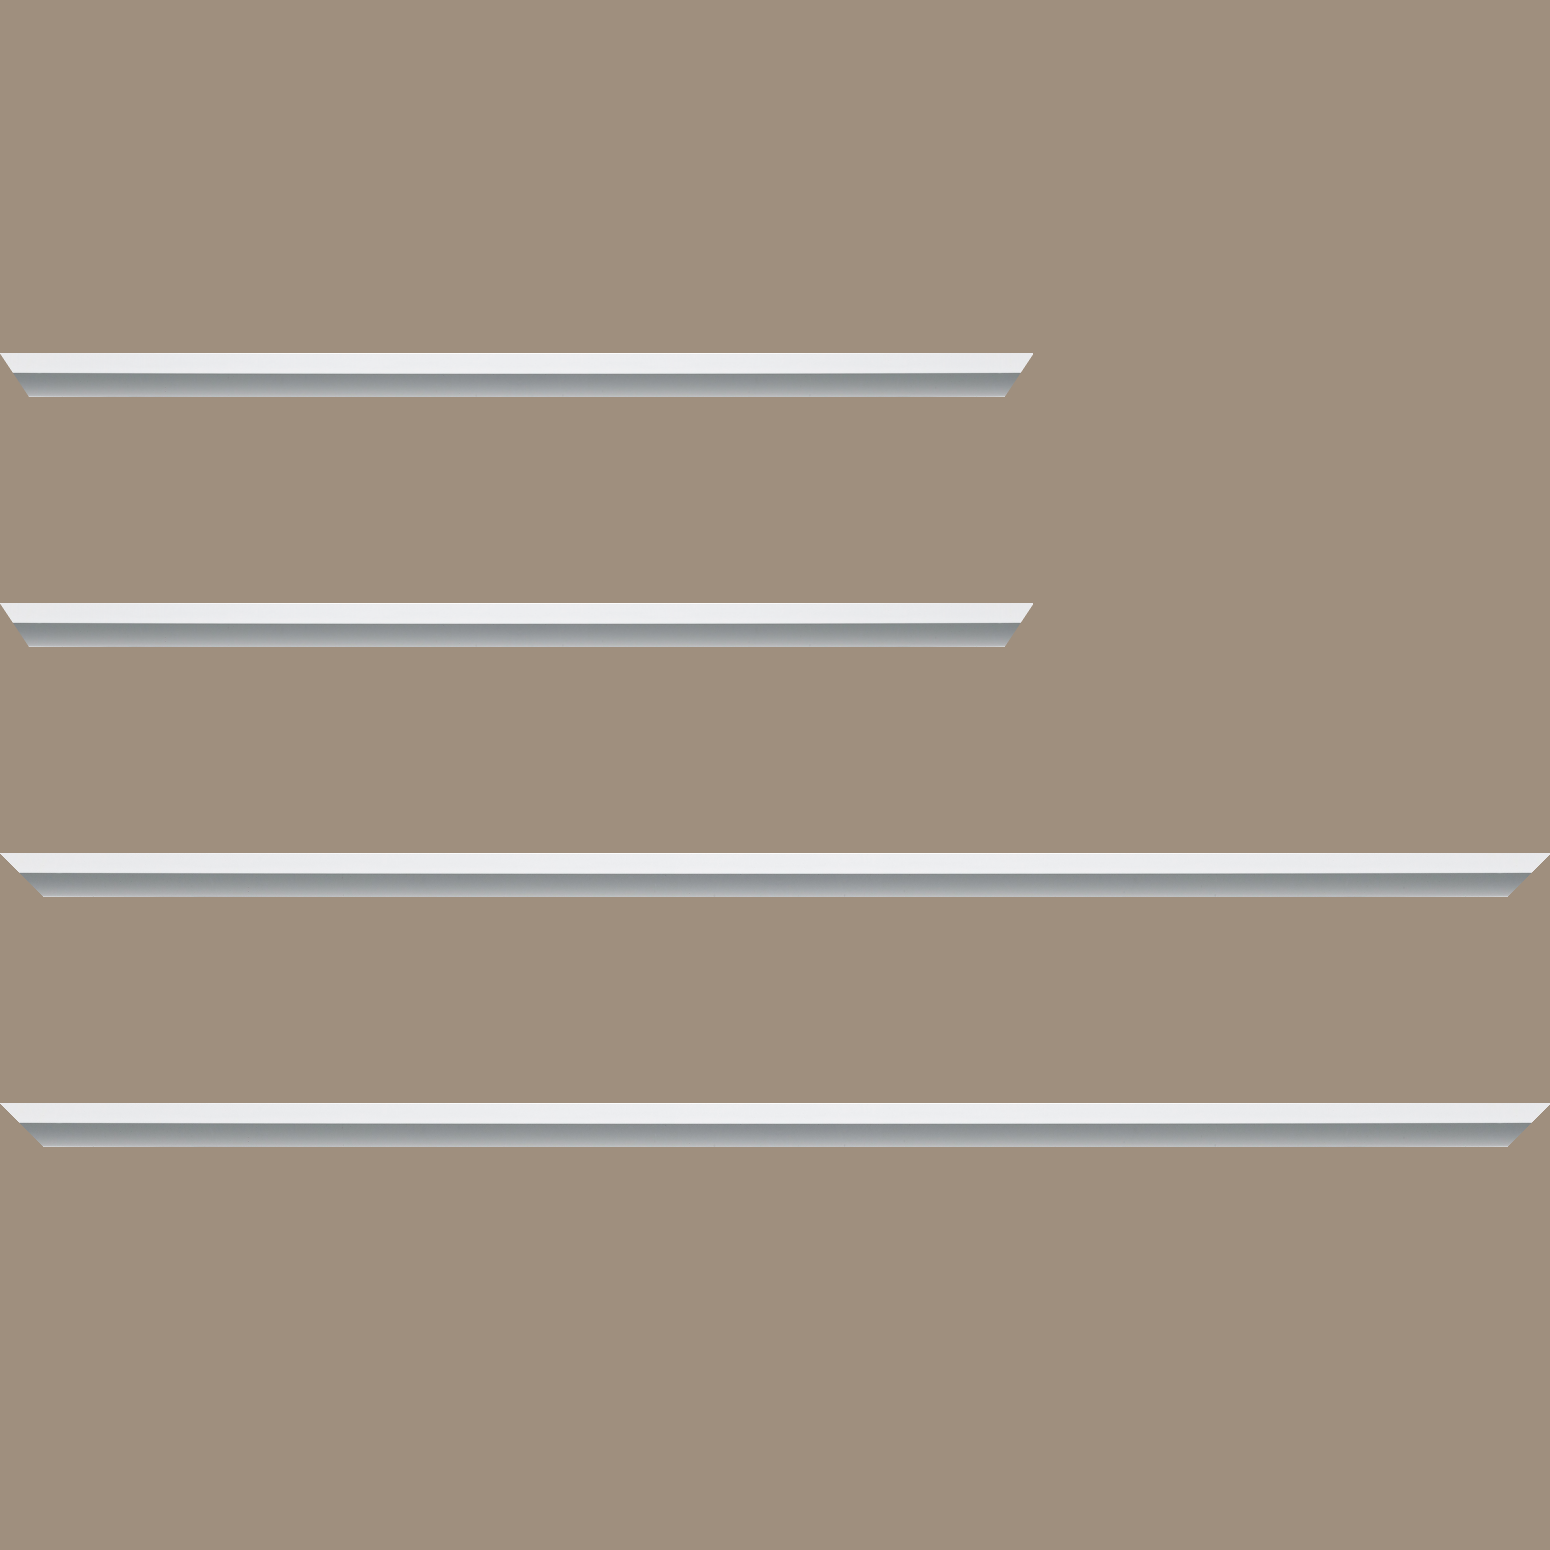 Baguette aluminium profil plat largeur 7mm, couleur blanc mat ,(le sujet qui sera glissé dans le cadre sera en retrait de 9mm de la face du cadre assurant un effet très contemporain) mise en place du sujet rapide et simple: assemblage du cadre par double équerre à vis (livré avec le système d'accrochage qui se glisse dans le profilé) encadrement non assemblé,  livré avec son sachet d'accessoires - 70x100